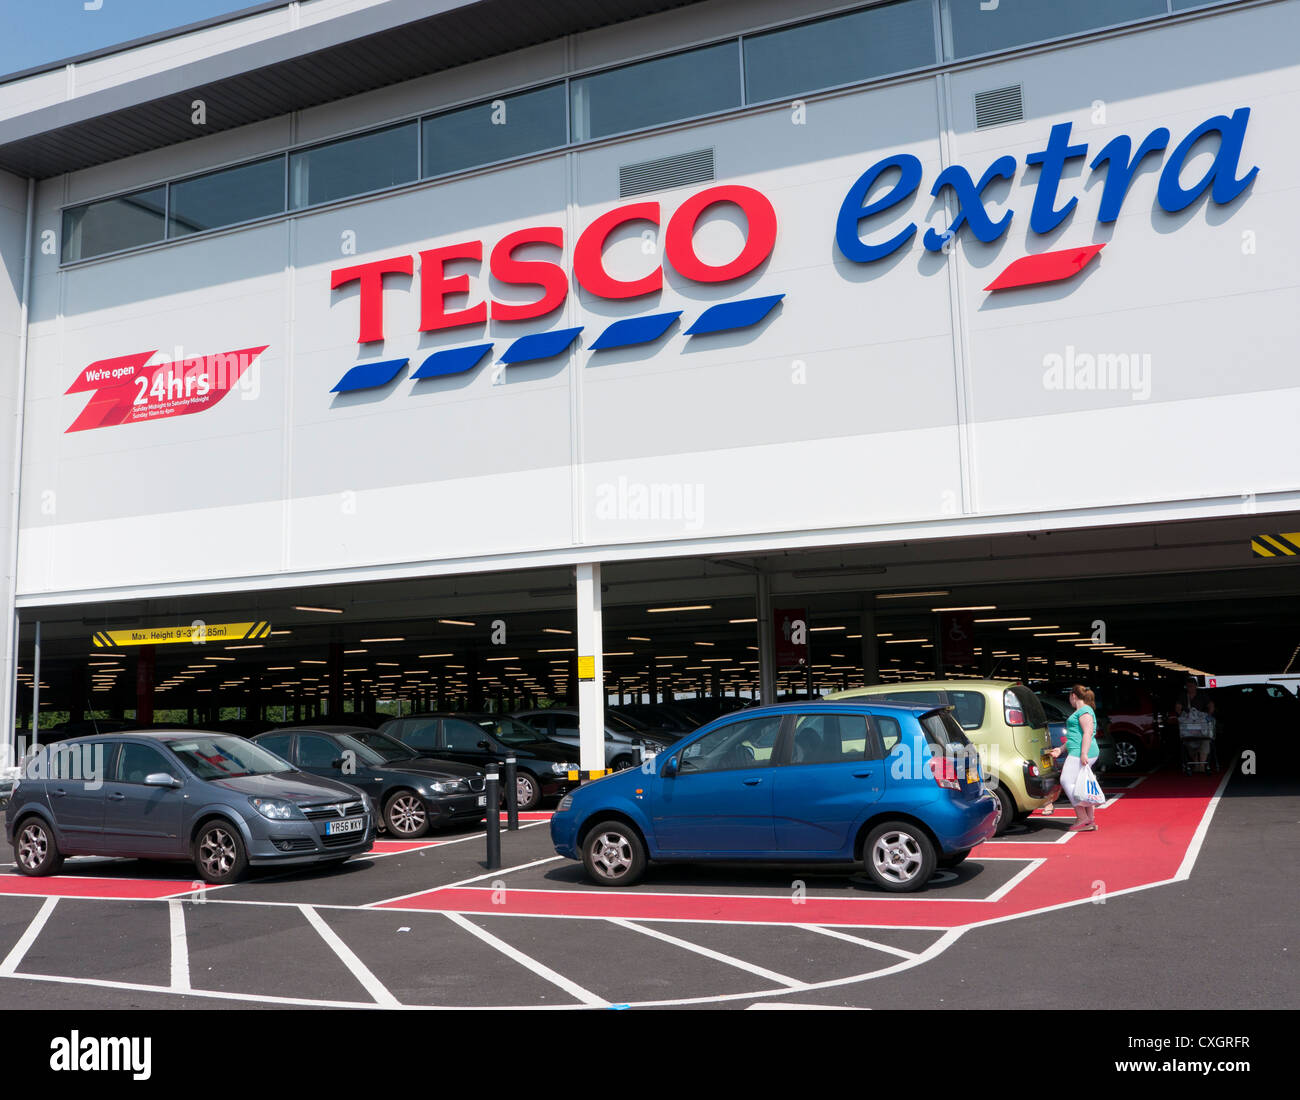 Tesco Extra in Gran Bretagna con parcheggio al di sotto del negozio per un facile accesso Foto Stock